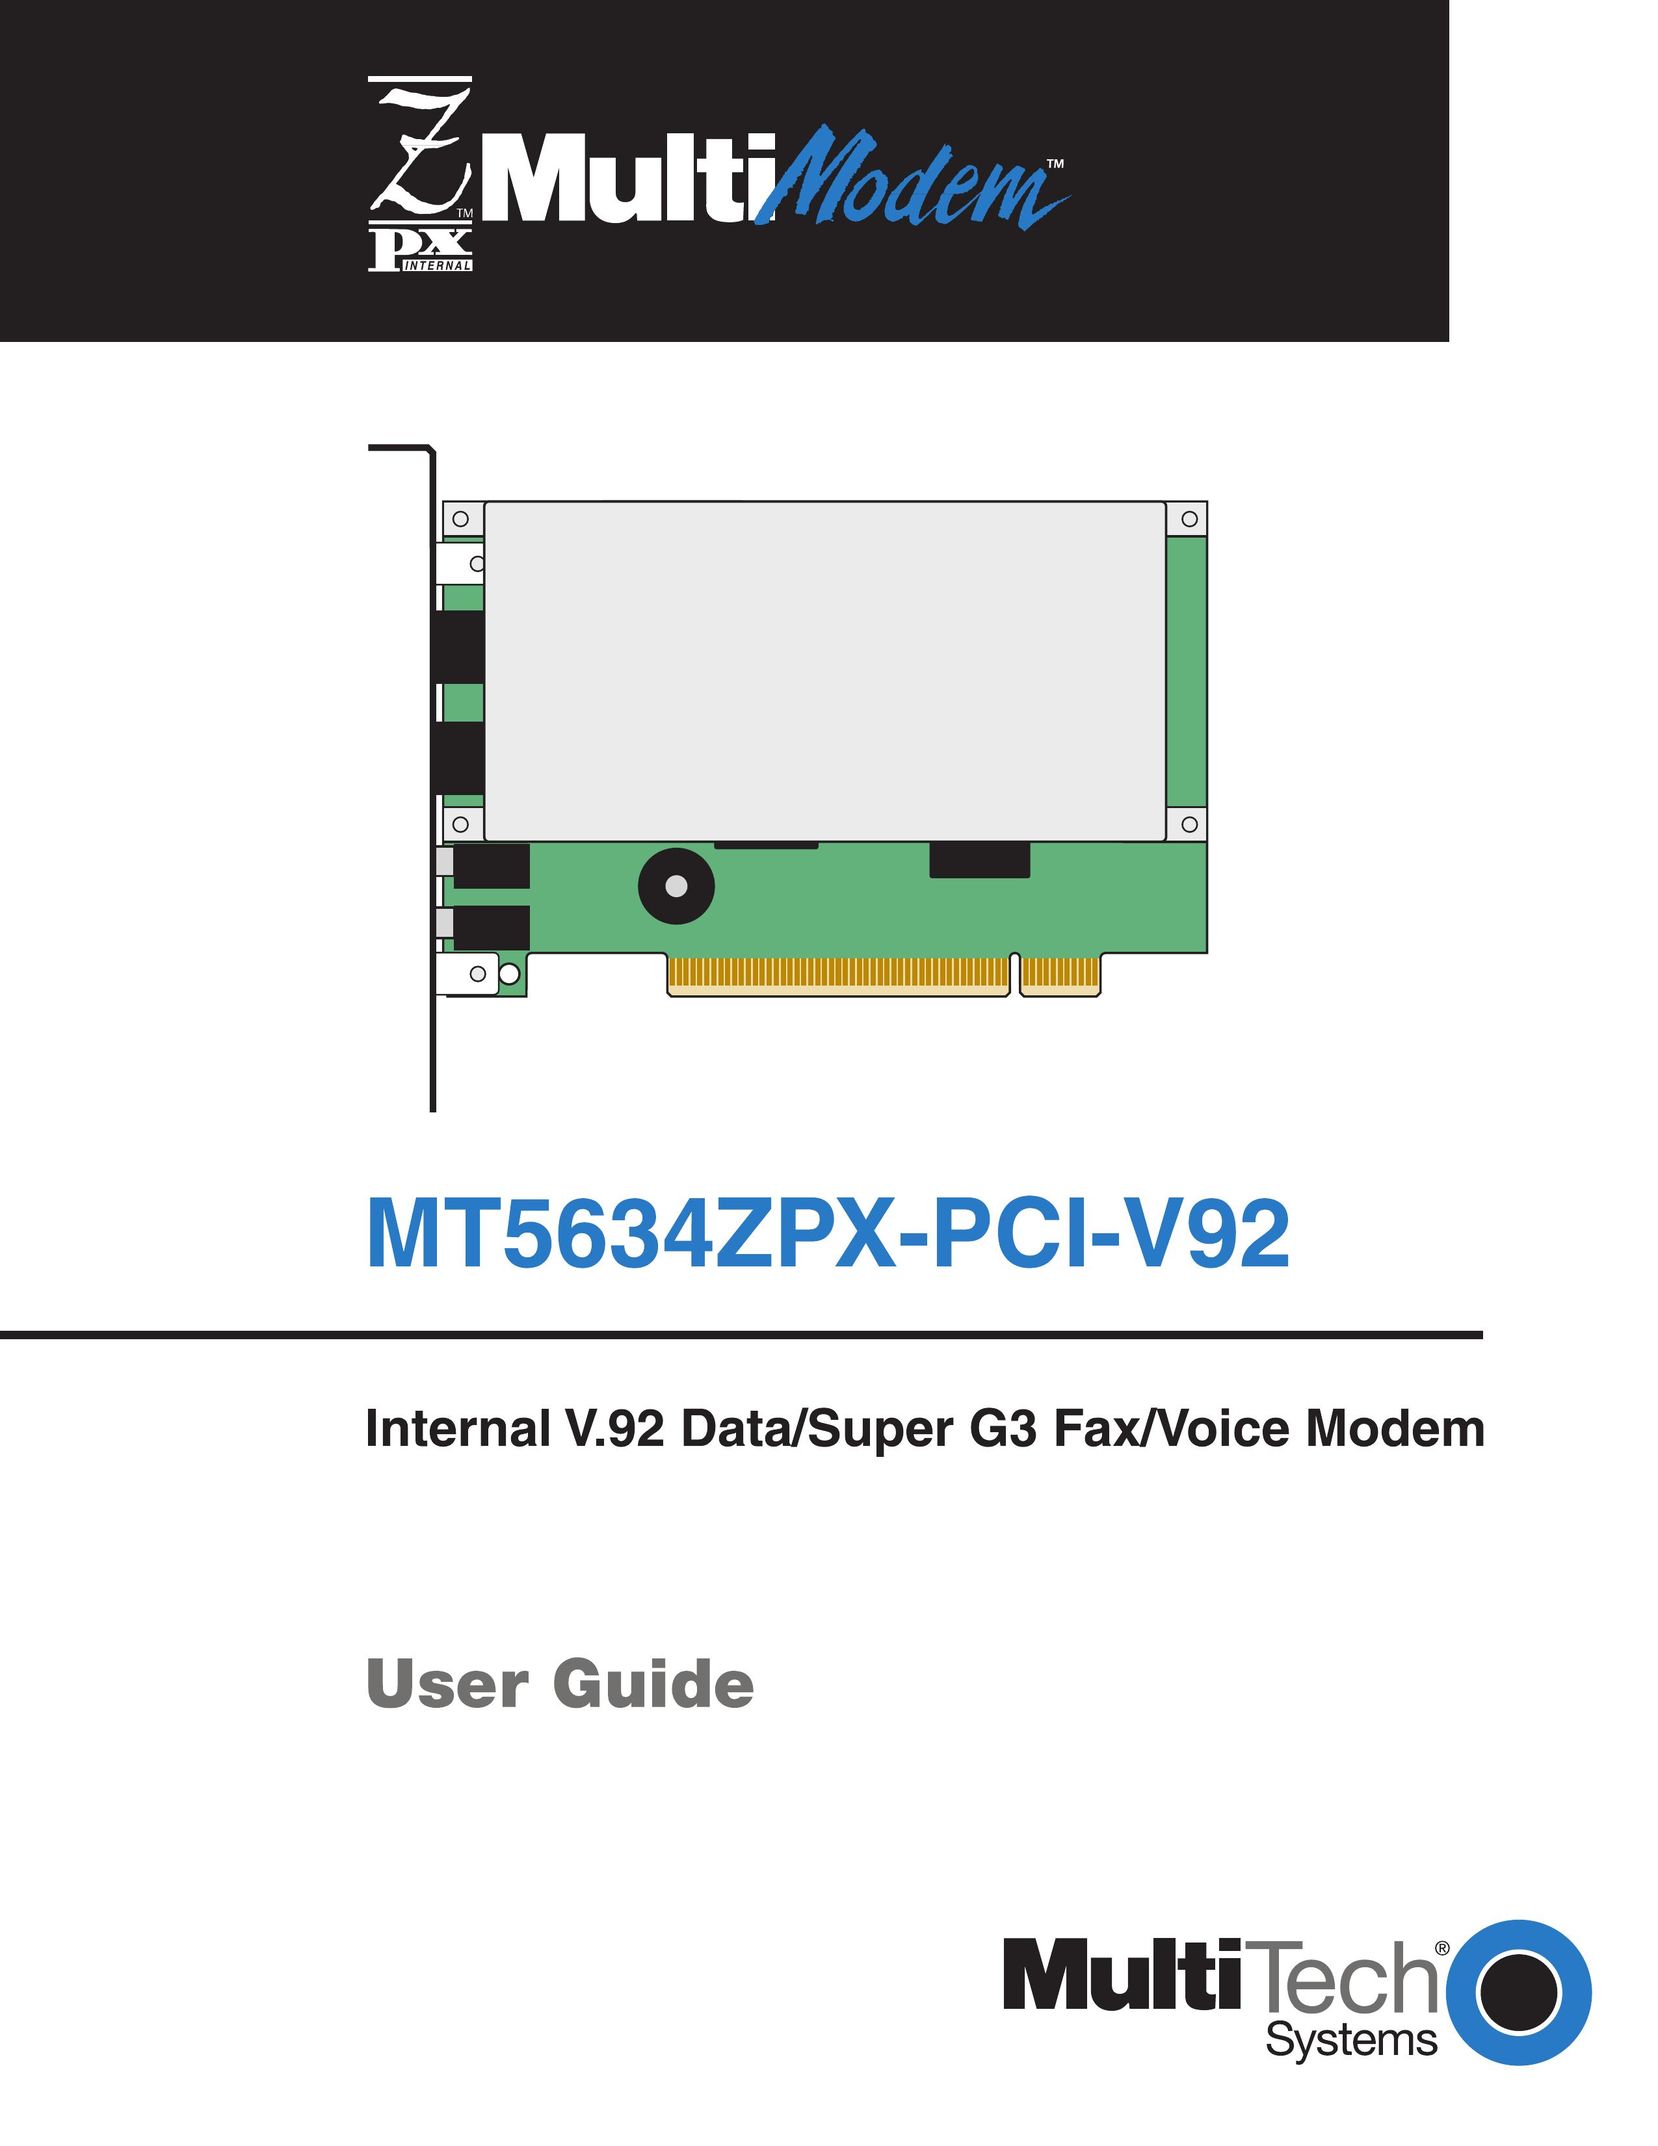 Multi-Tech Systems MT5634ZPX-PCI-V92 Modem User Manual